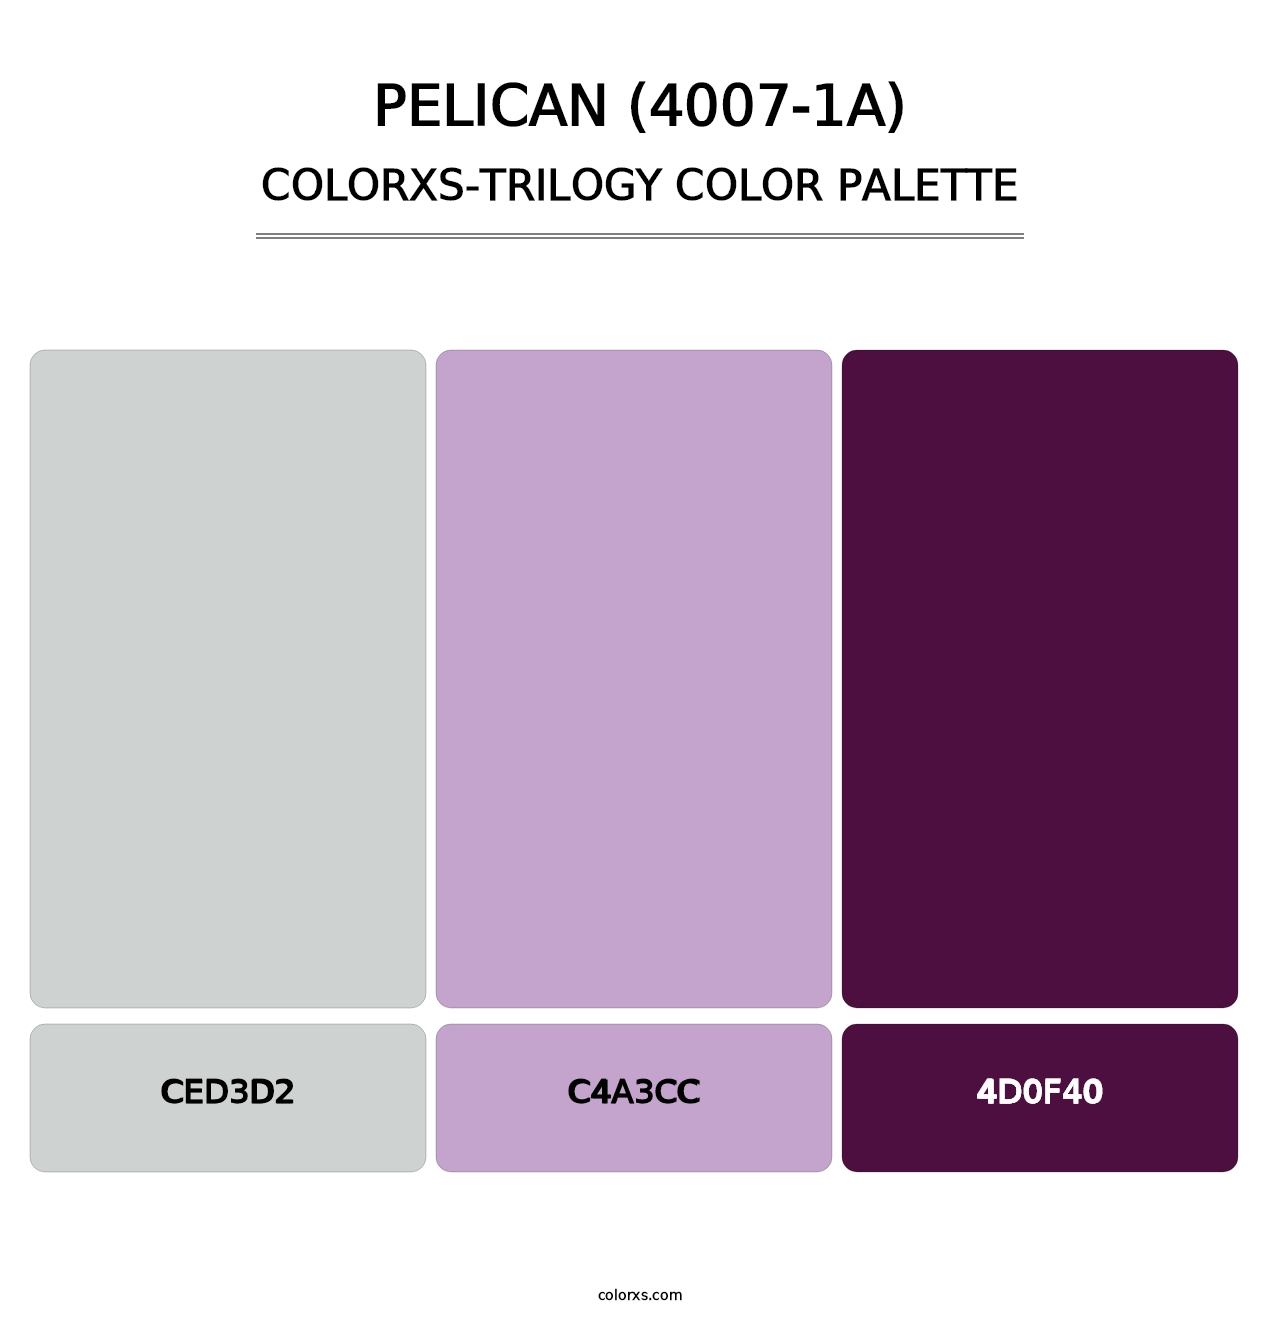 Pelican (4007-1A) - Colorxs Trilogy Palette